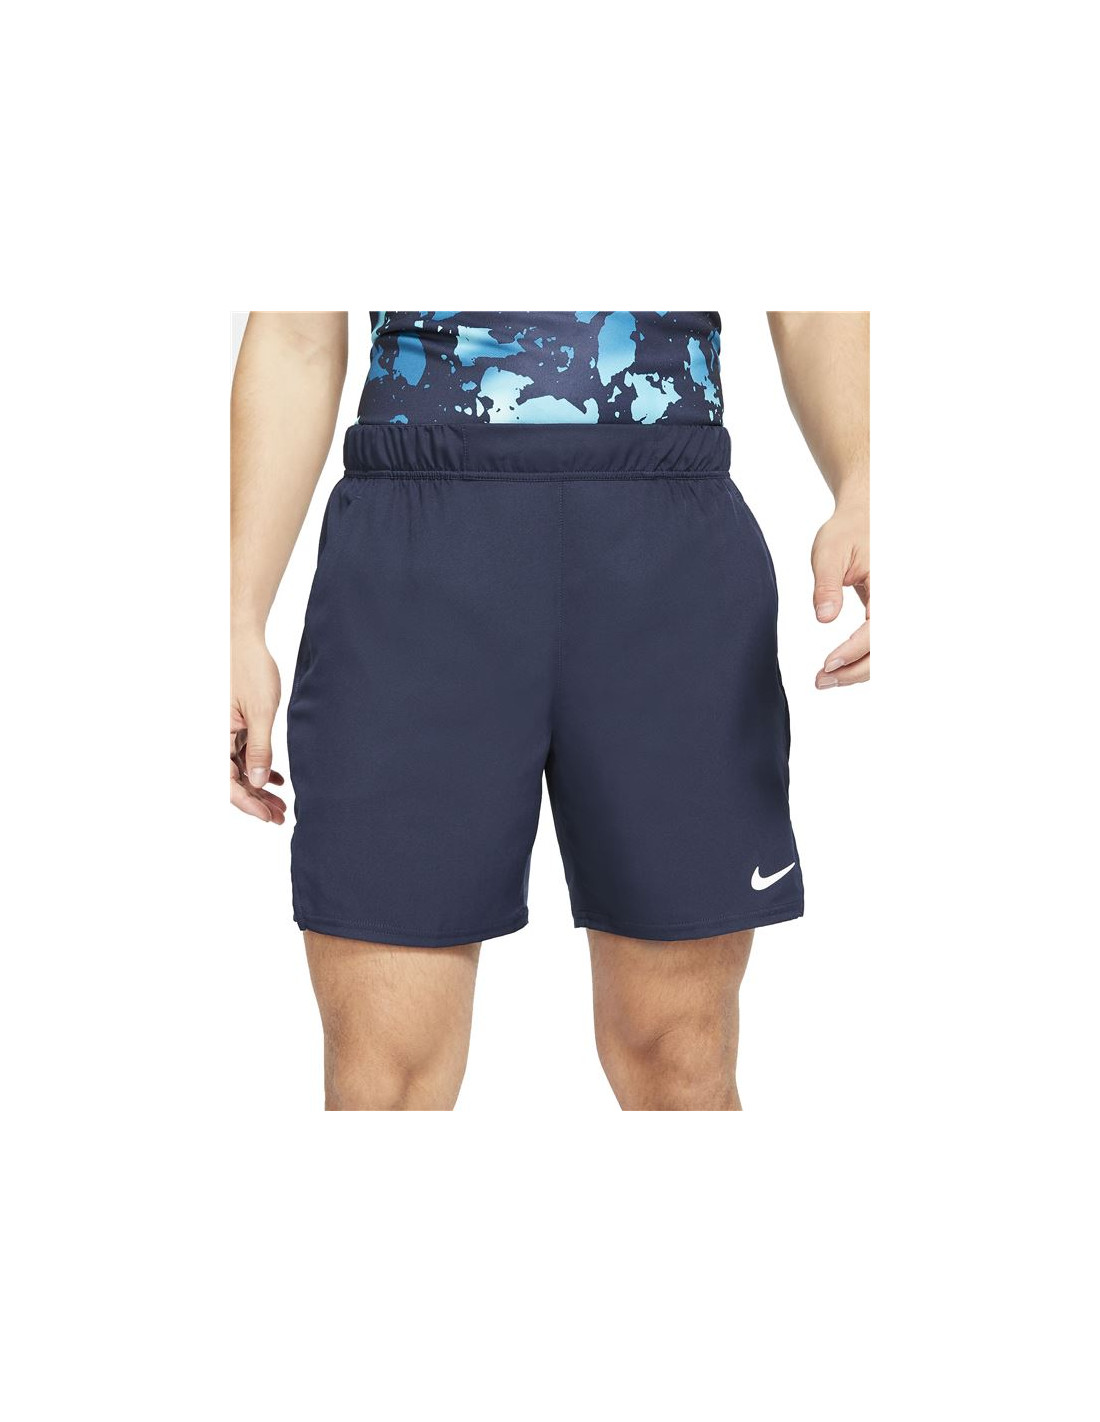 Pantalones cortos de tenis nike court flex victory m blue